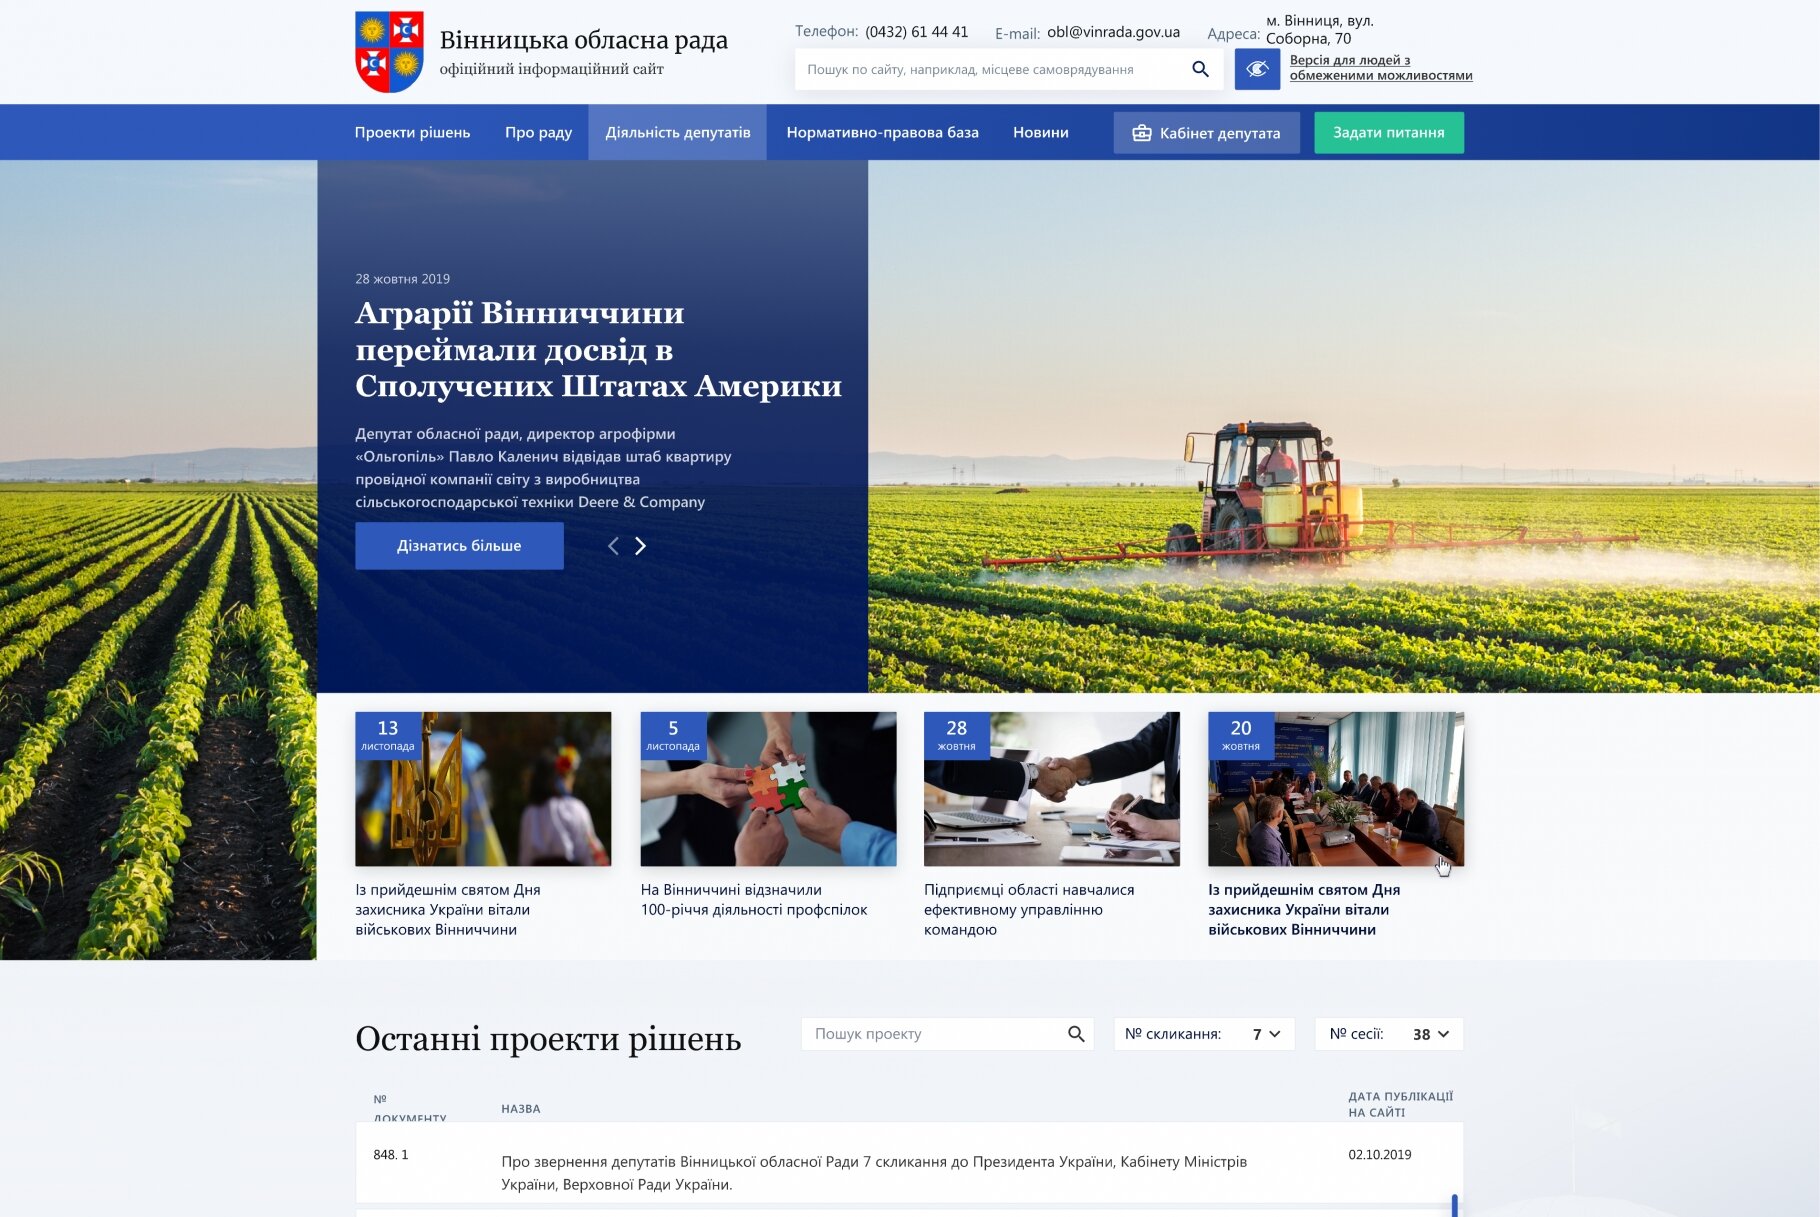 ™ Глянець, студія веб-дизайну — Document management for the Vinnytsia Regional Council_1